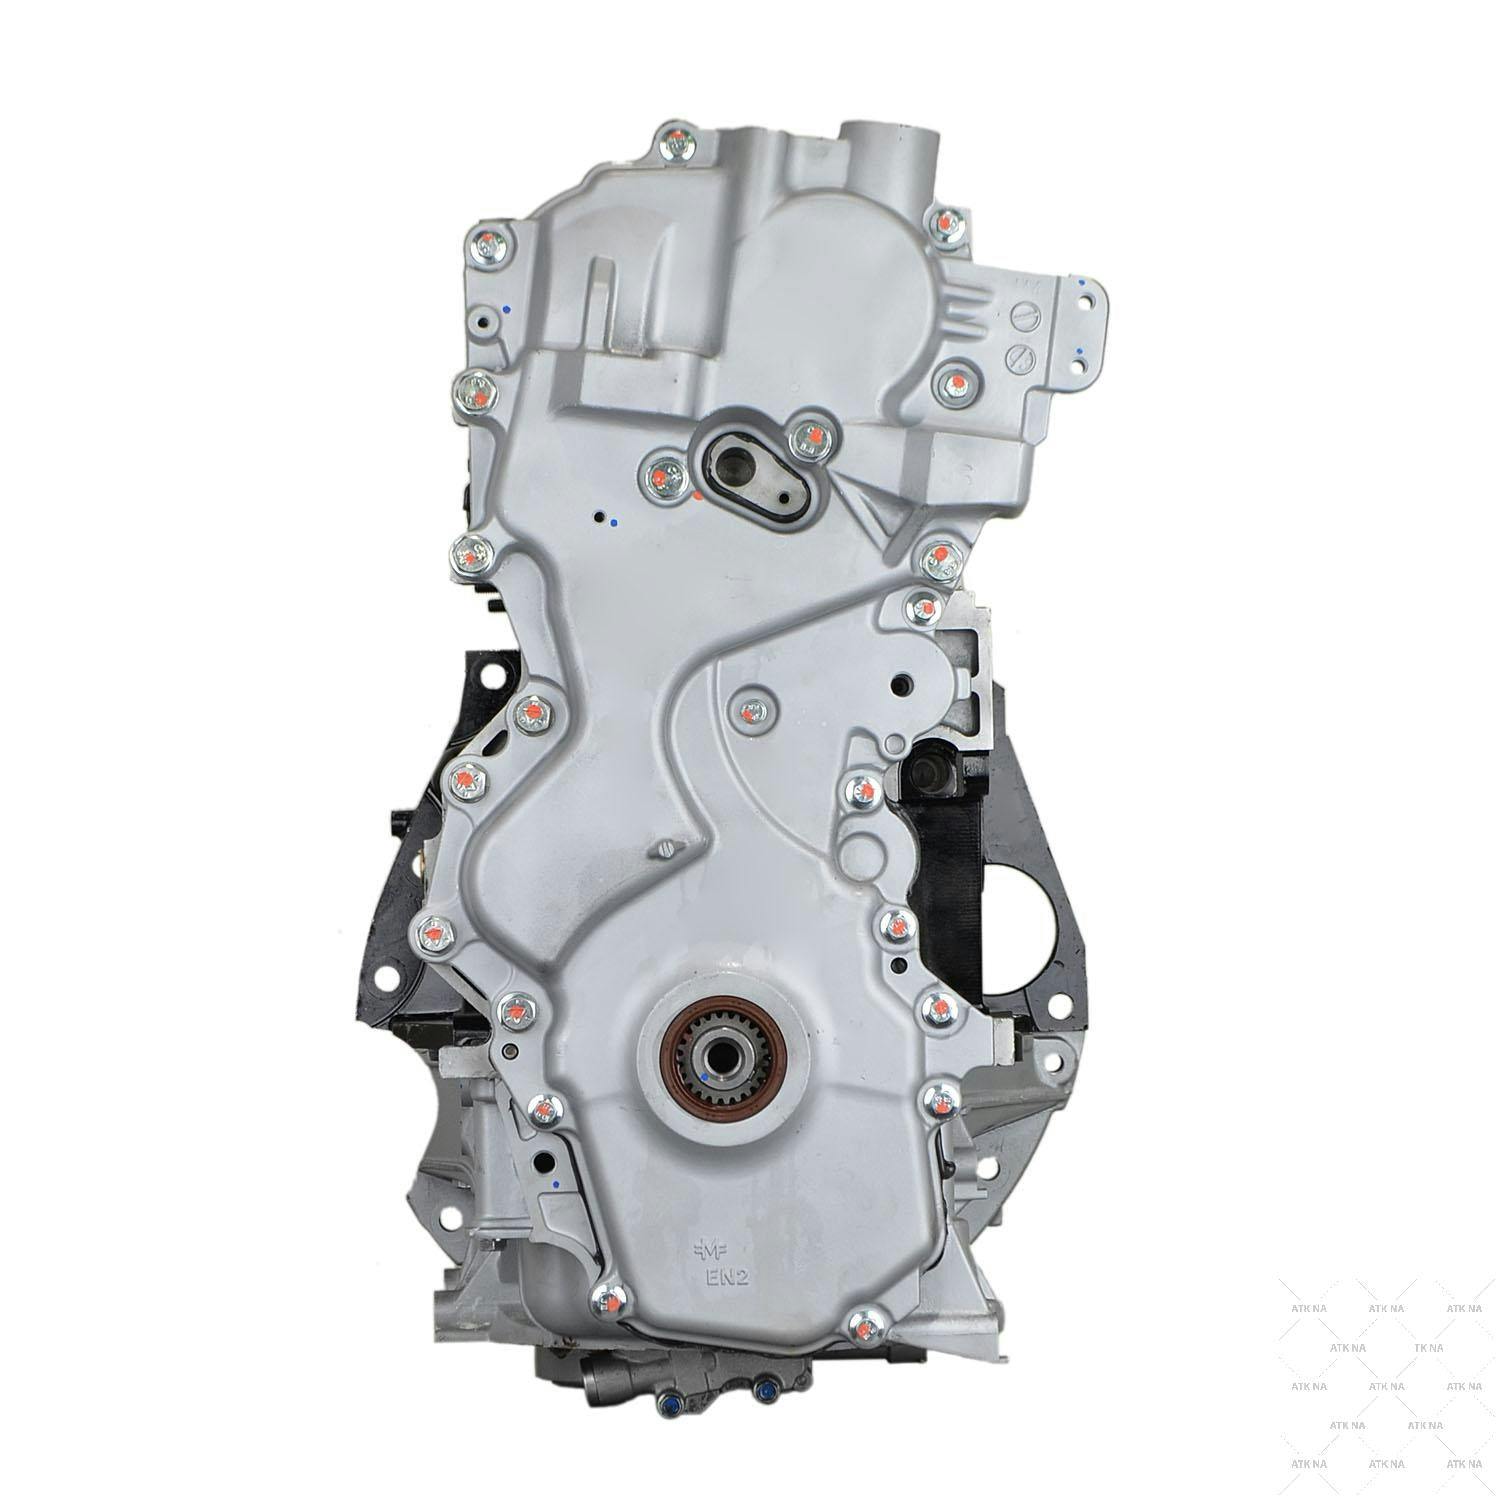 2L Inline-4 Engine for 2007-2012 Nissan Sentra